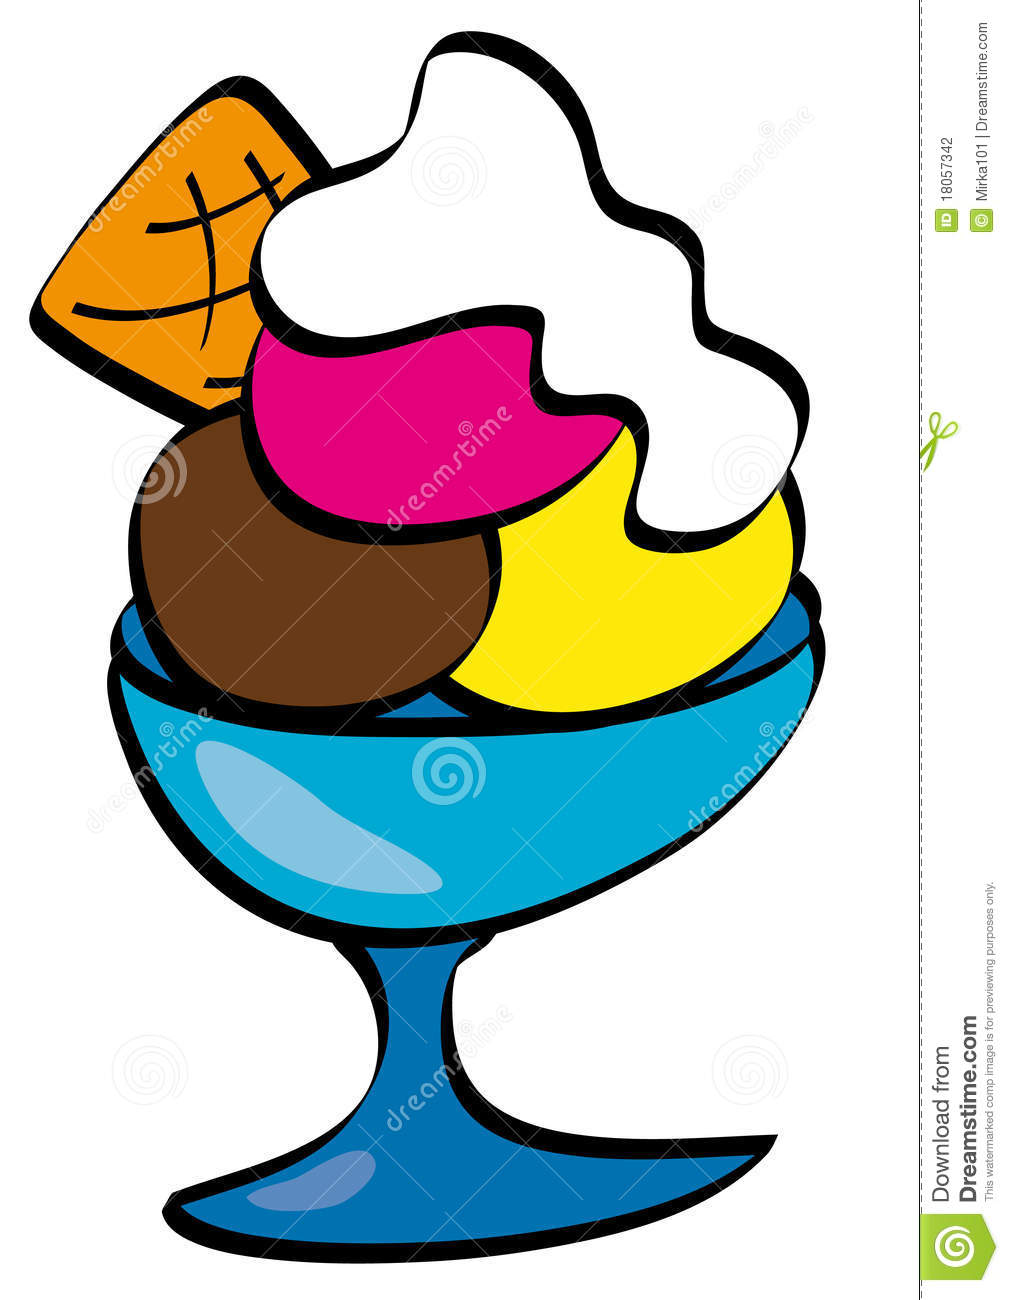 Ice Cream Bowl Clipart Small Bowl Ice Cream Colored 18057342 Jpg